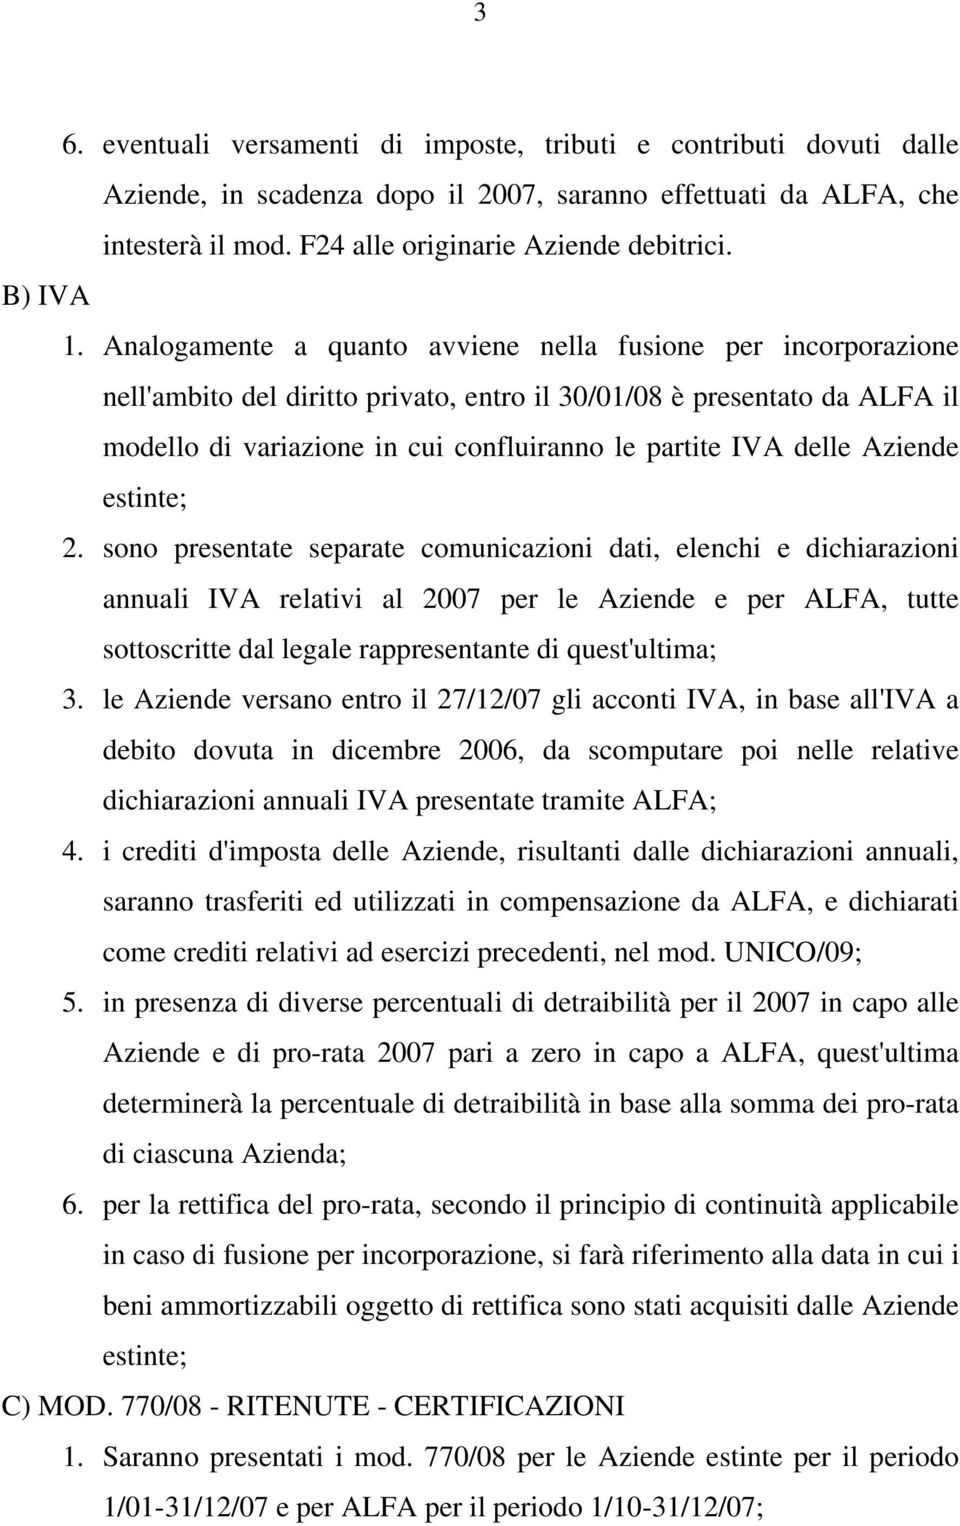 Analogamente a quanto avviene nella fusione per incorporazione nell'ambito del diritto privato, entro il 30/01/08 è presentato da ALFA il modello di variazione in cui confluiranno le partite IVA